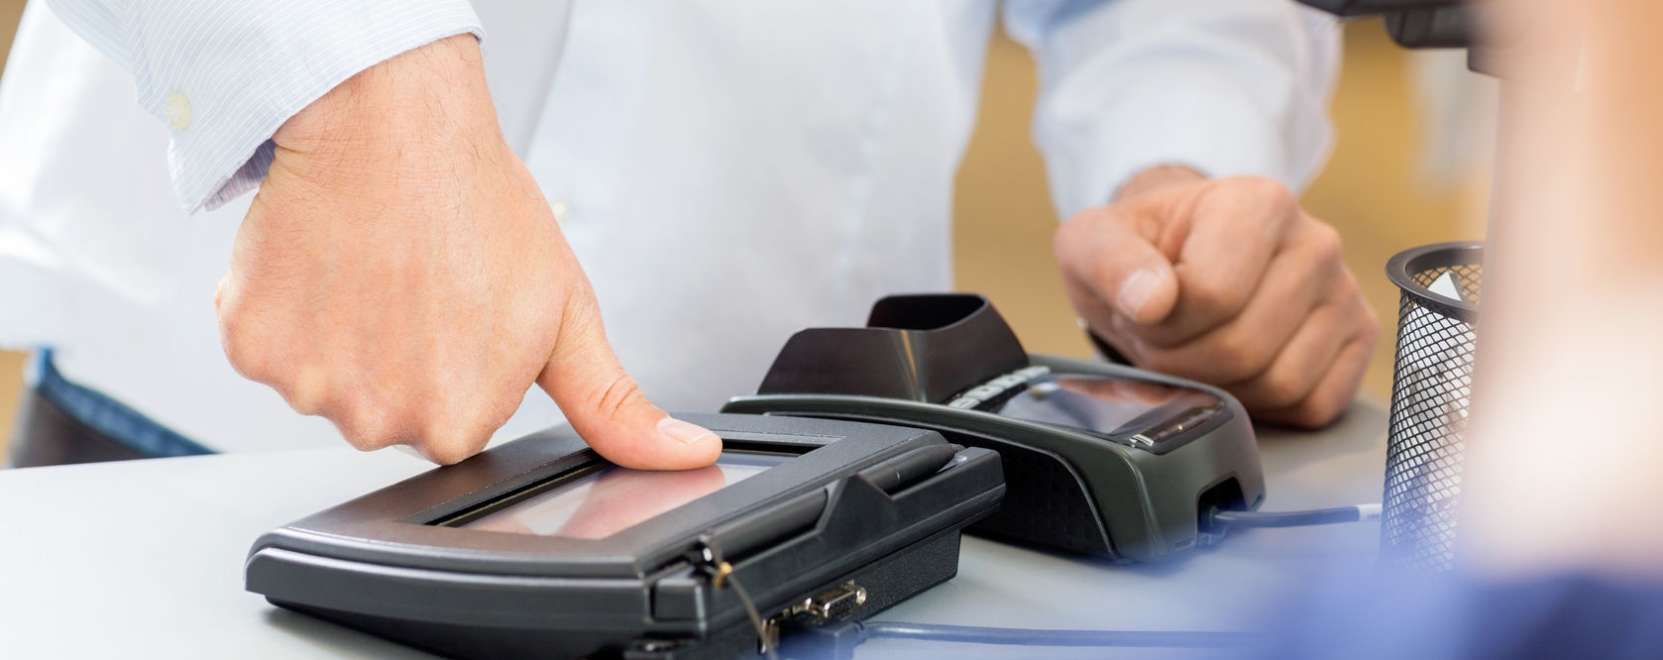 Biometrikus bankkártyát tesztel a Mastercard